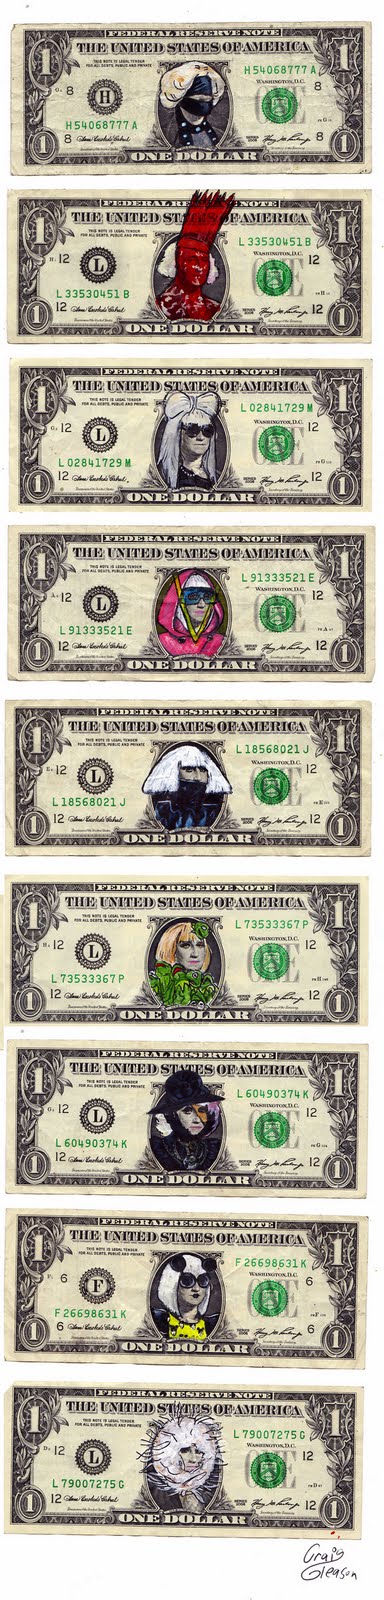 20 dollar bill clip art. These dollar bills by Craig